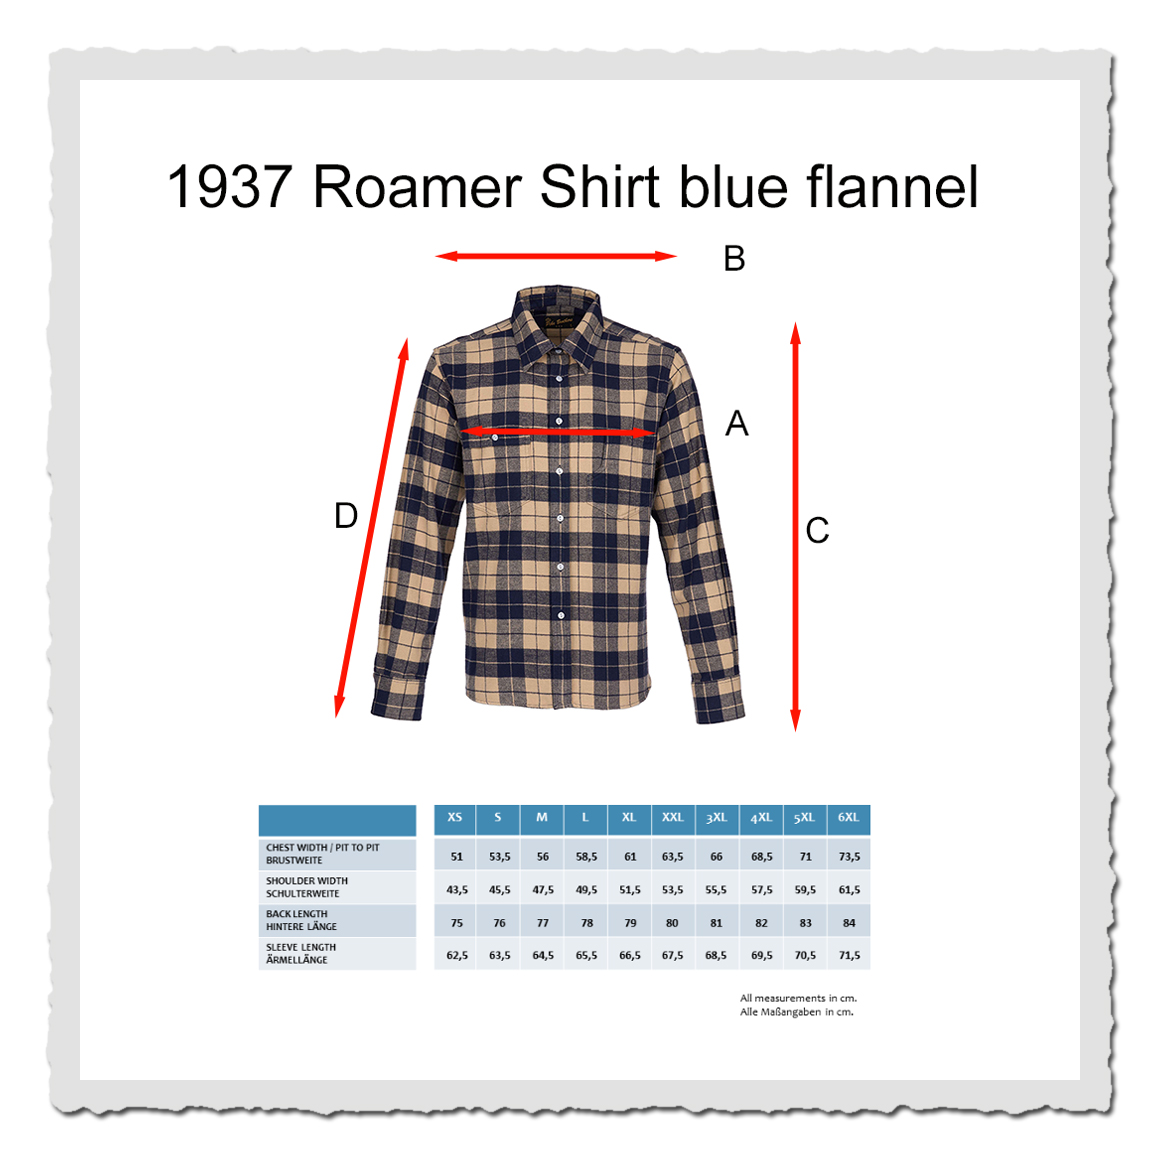 1937 Roamer Shirt blue flannel